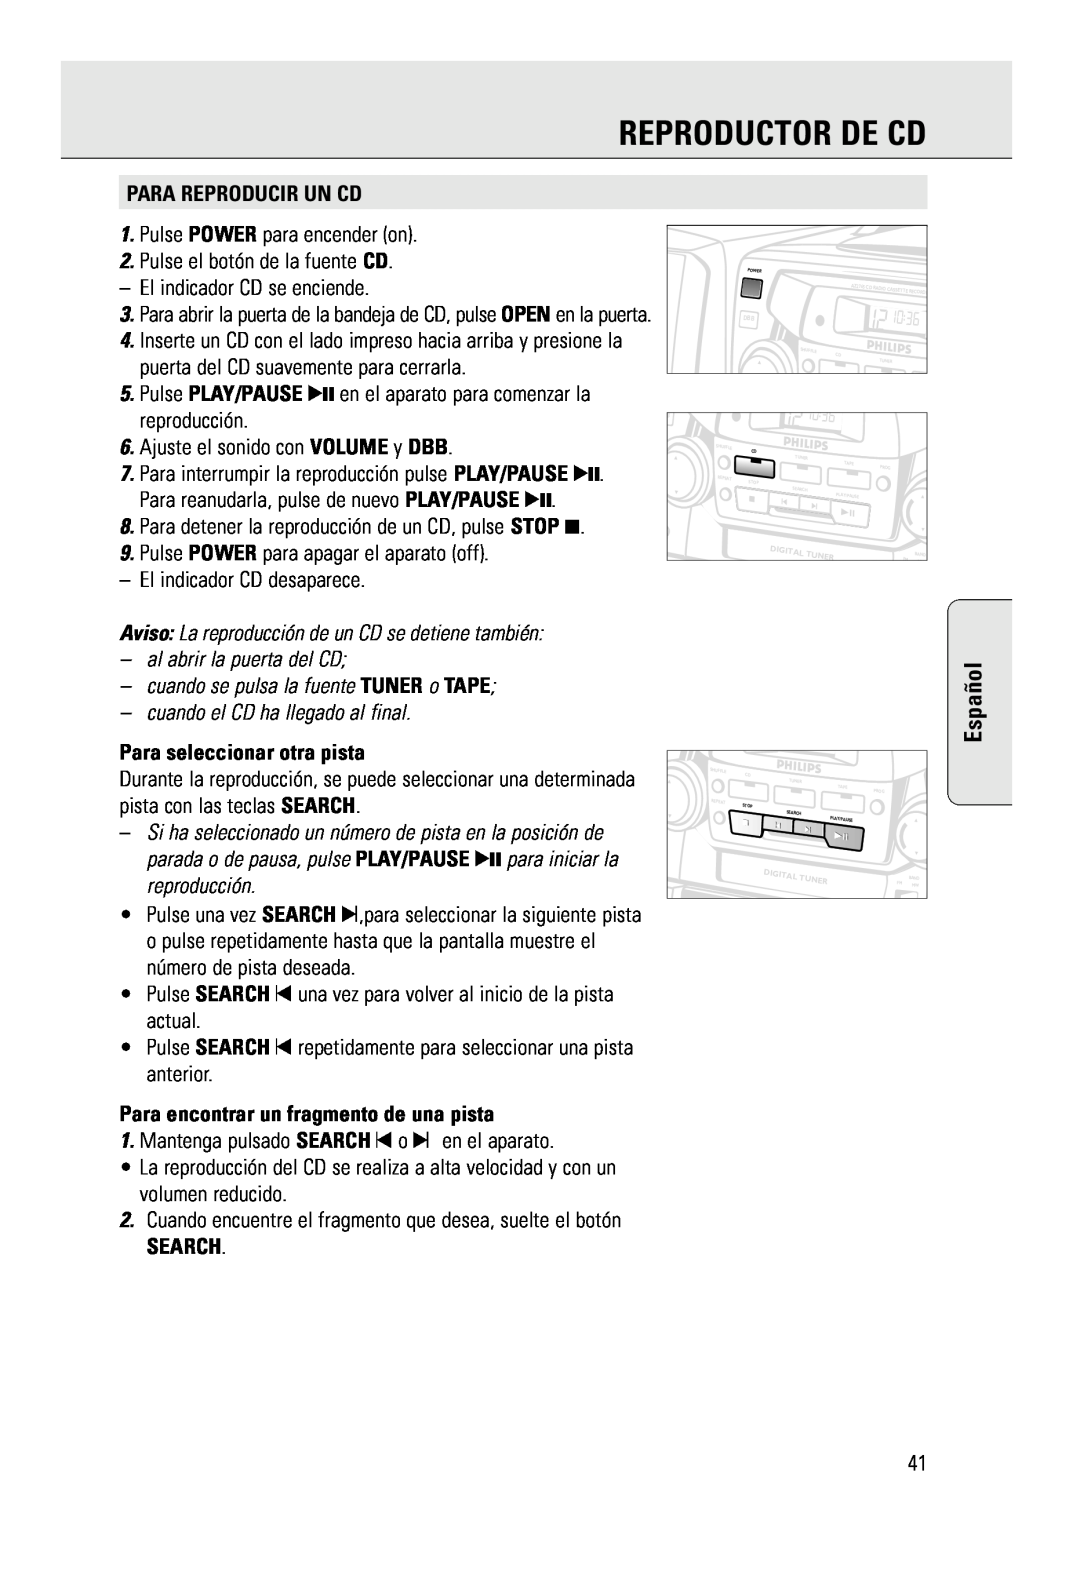 Philips AZ 2785 manual Reproductor De Cd, Español, Para Reproducir Un Cd, Para seleccionar otra pista, Search 